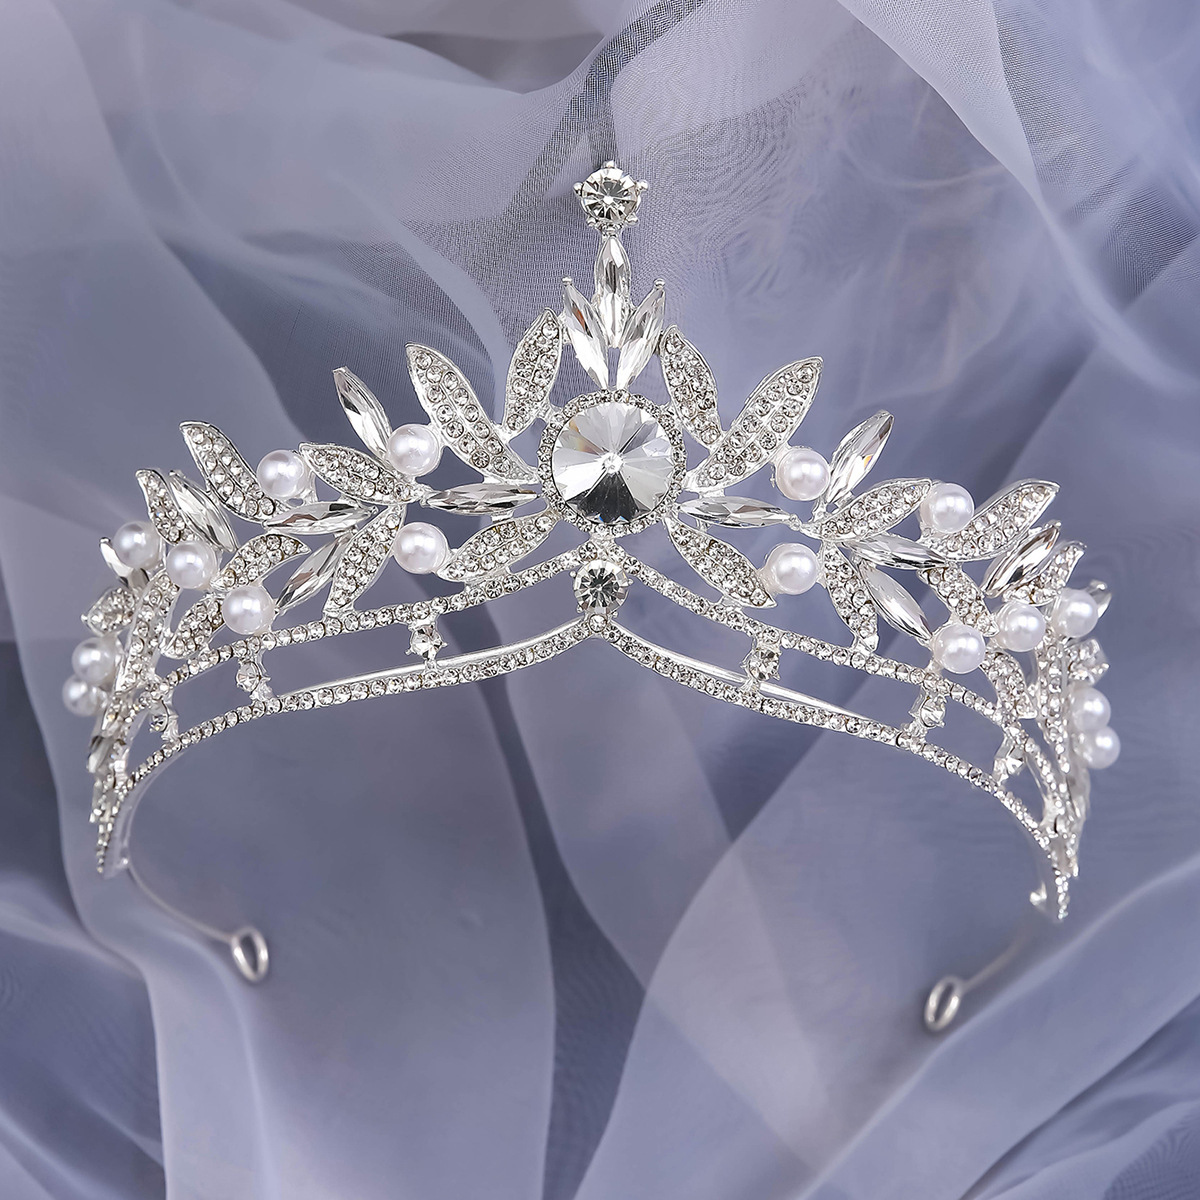 Fairy crown